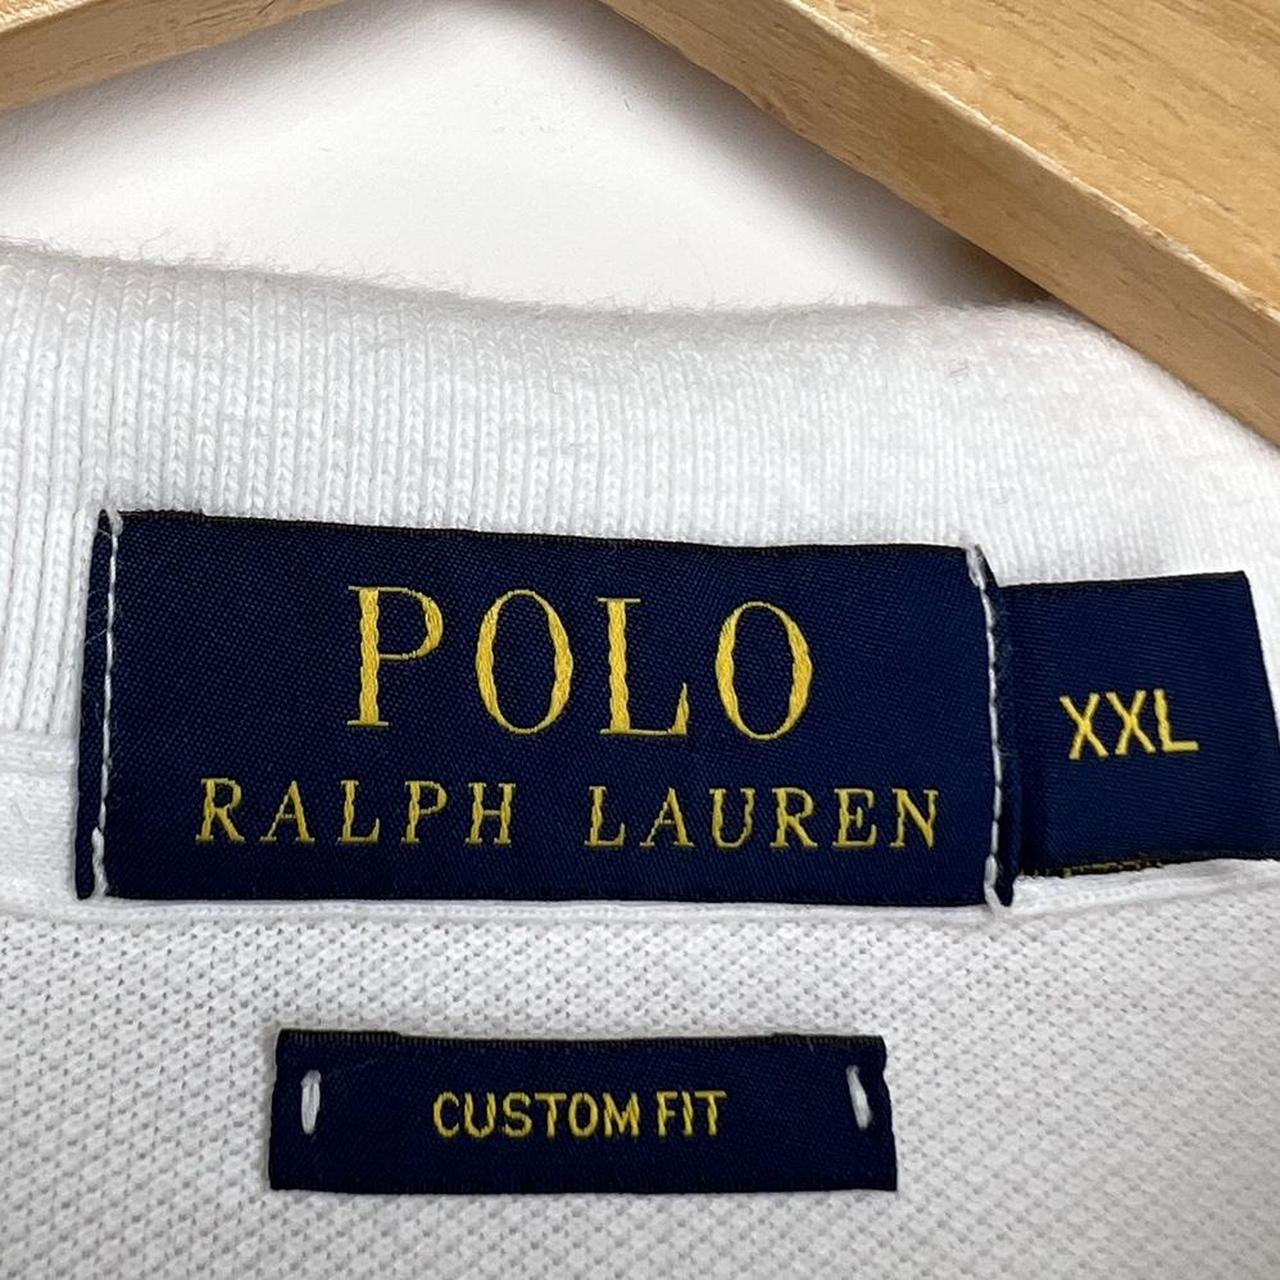 Ralph Lauren long sleeve polo shirt - size XXL... - Depop